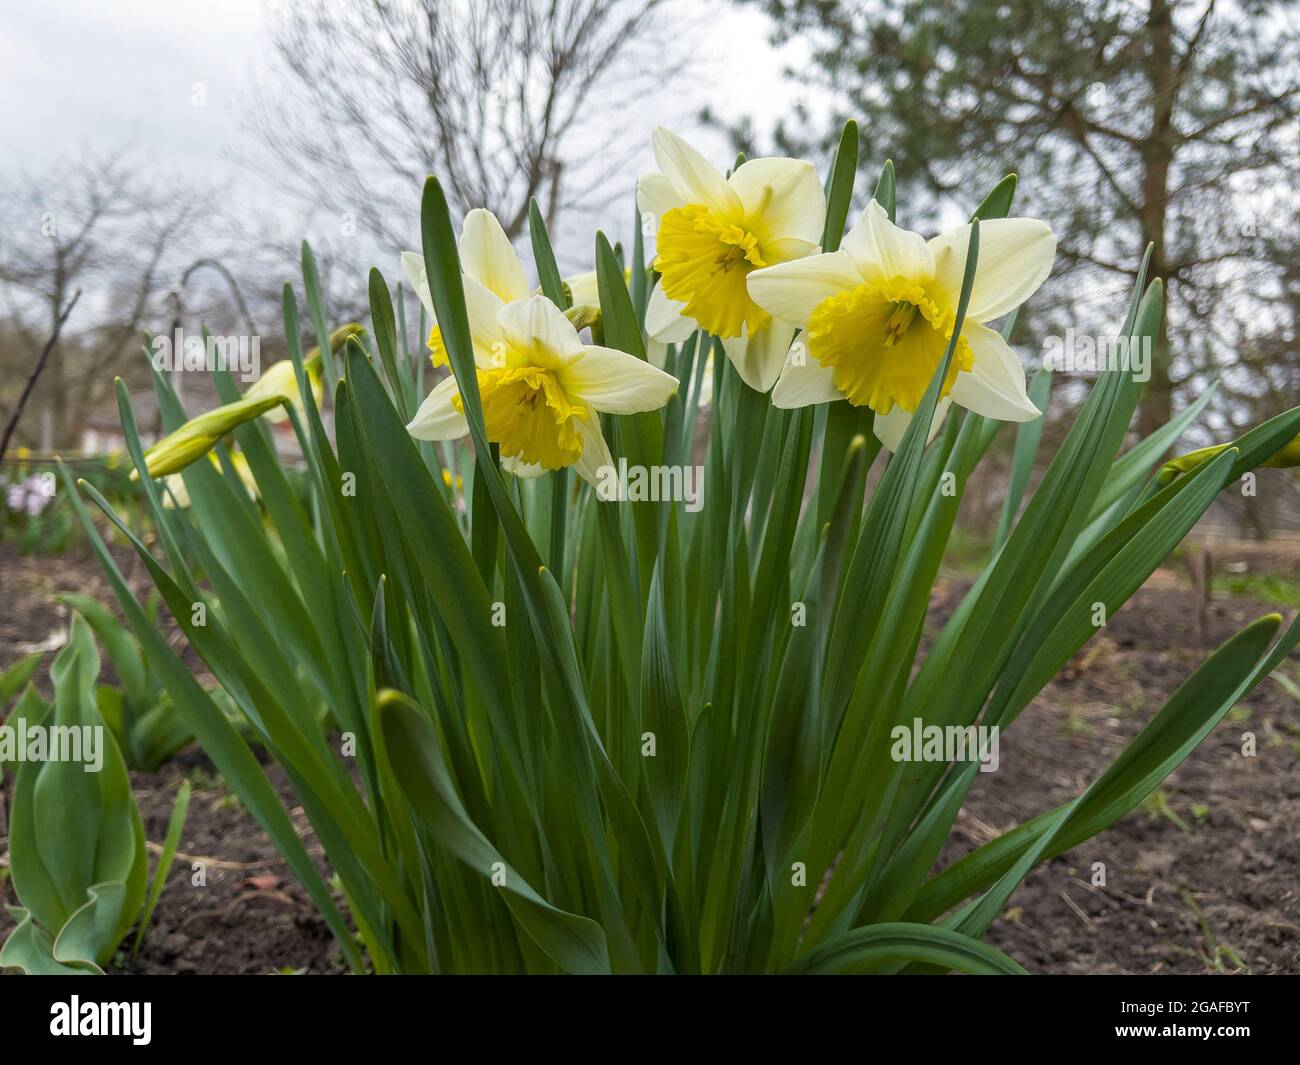 Daffodil Narcissus fleur jaune en fleur dans le jardin de printemps.  Jonquilles fraîches. Des narcisses fleuris dans le jardin Photo Stock -  Alamy